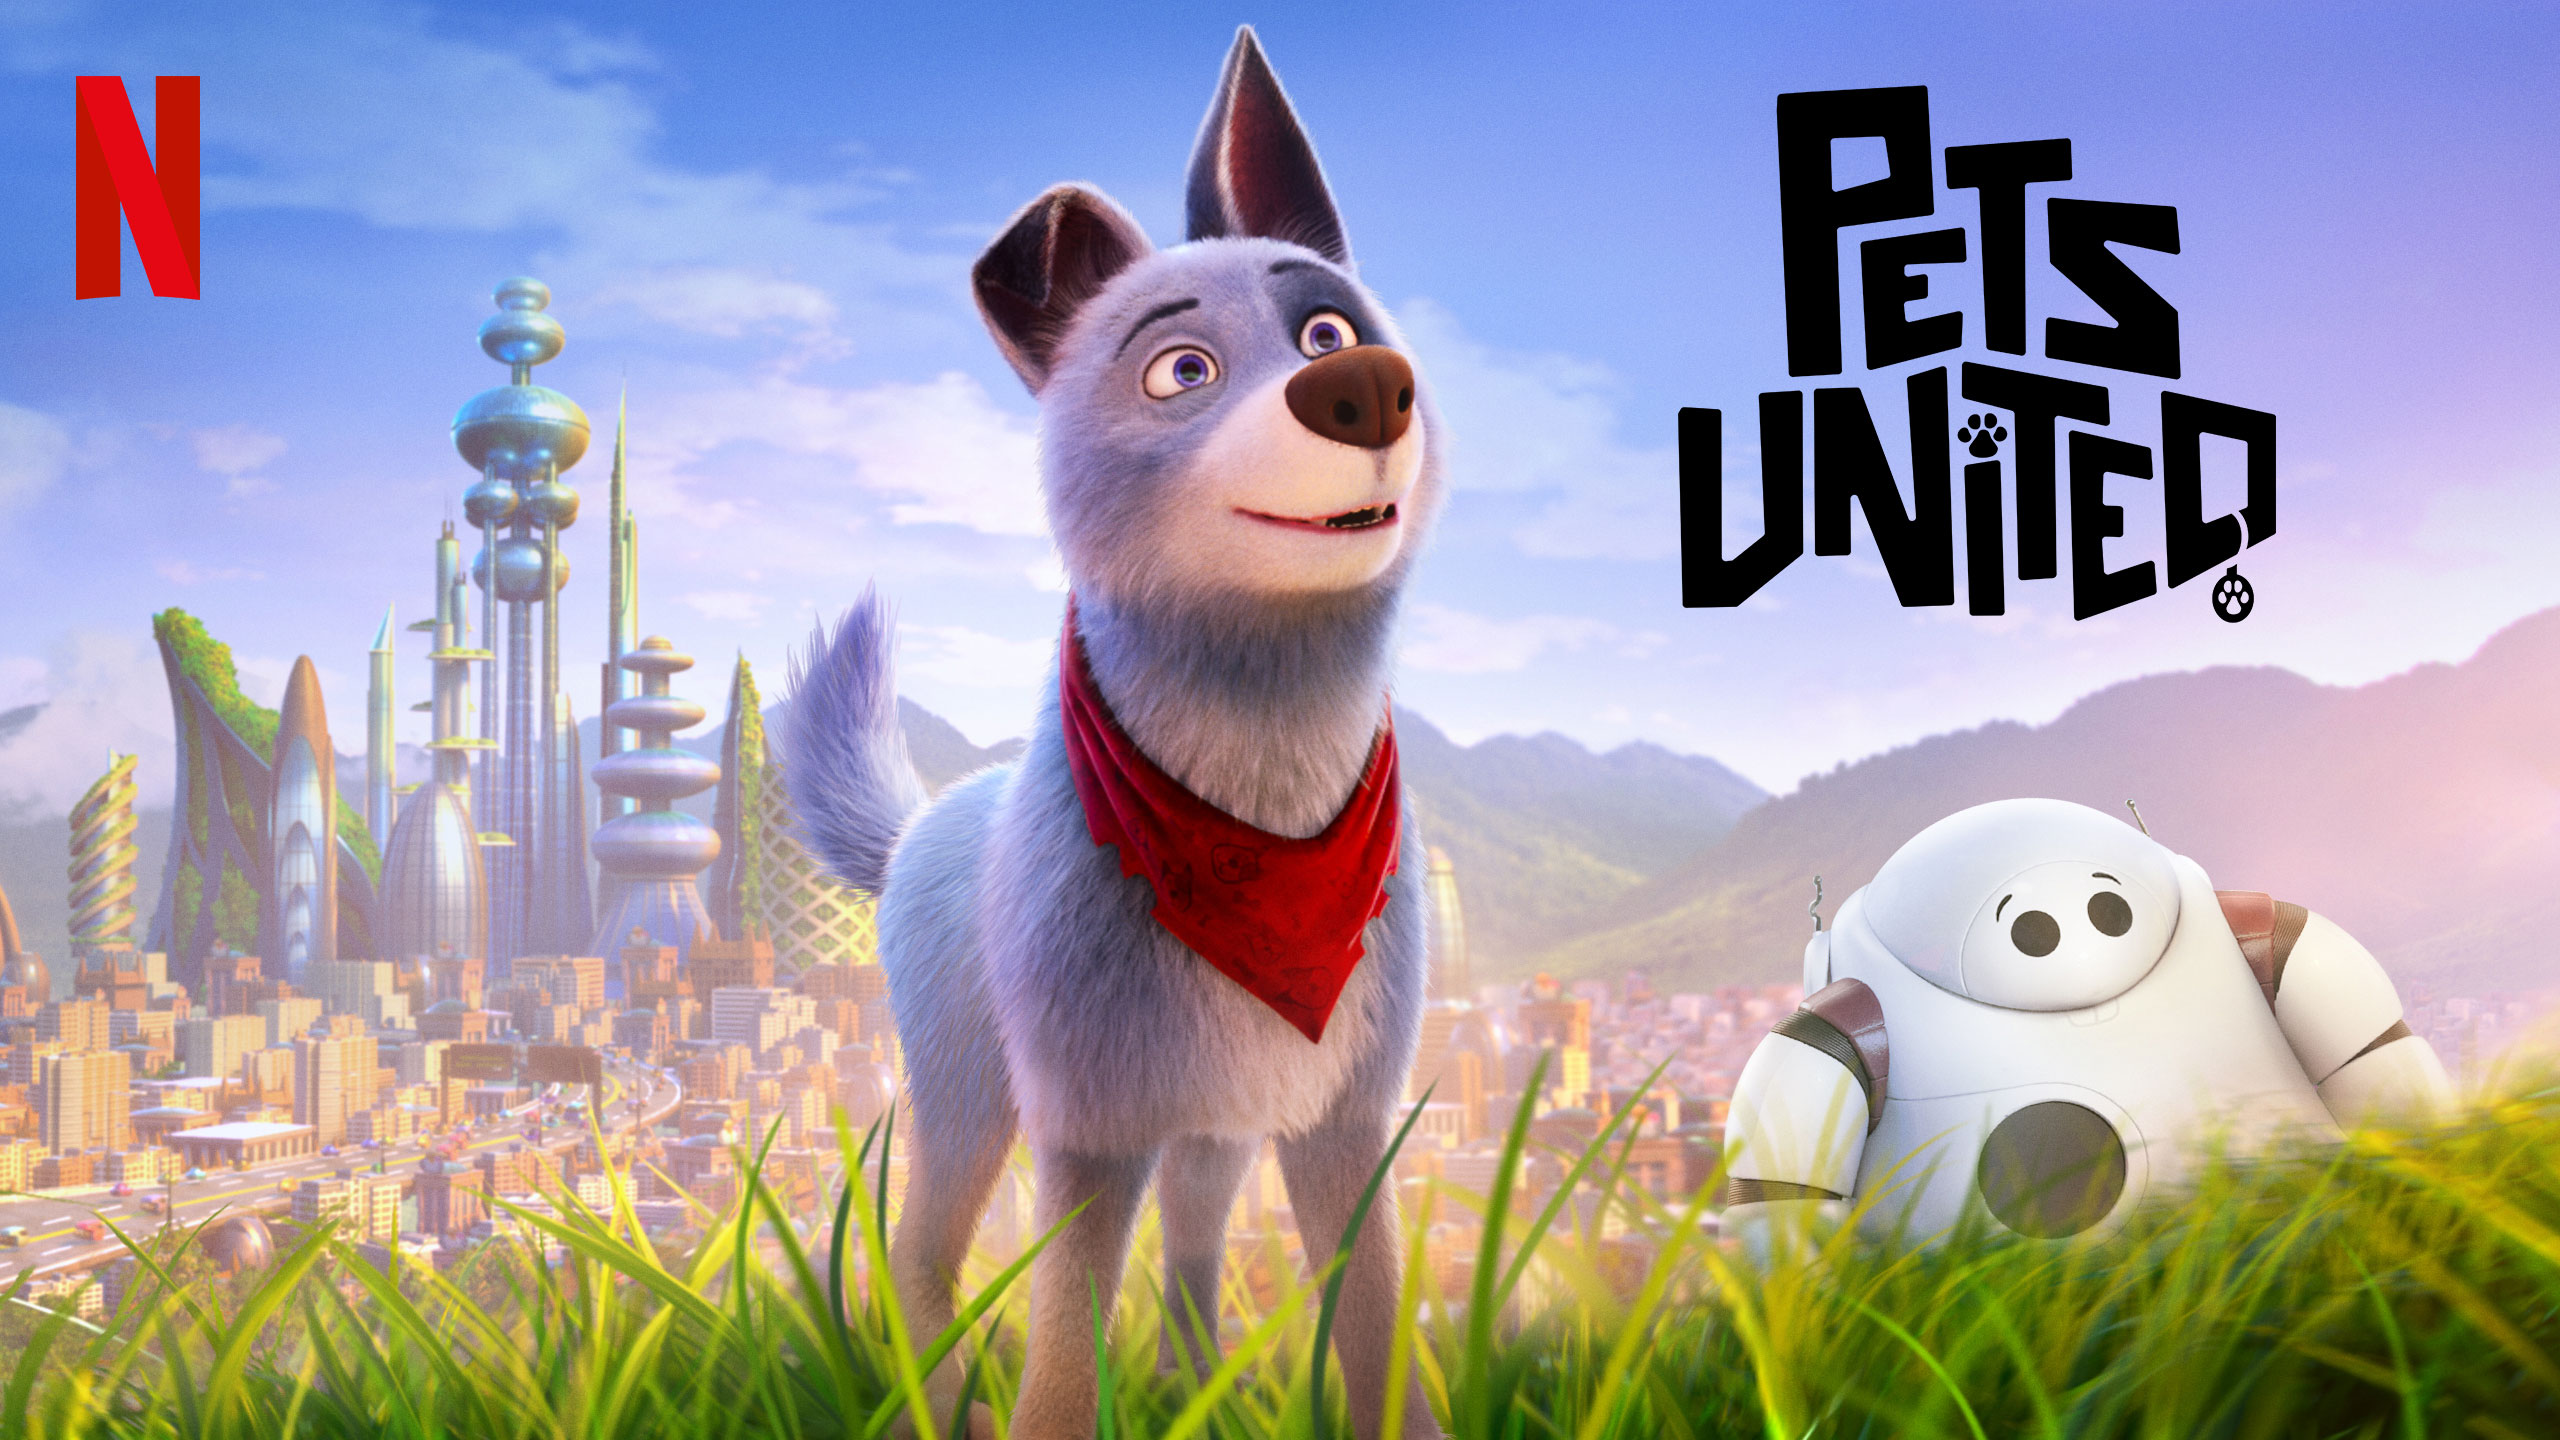 Pets United | Netflix DA Concept, Finishing & Illustration